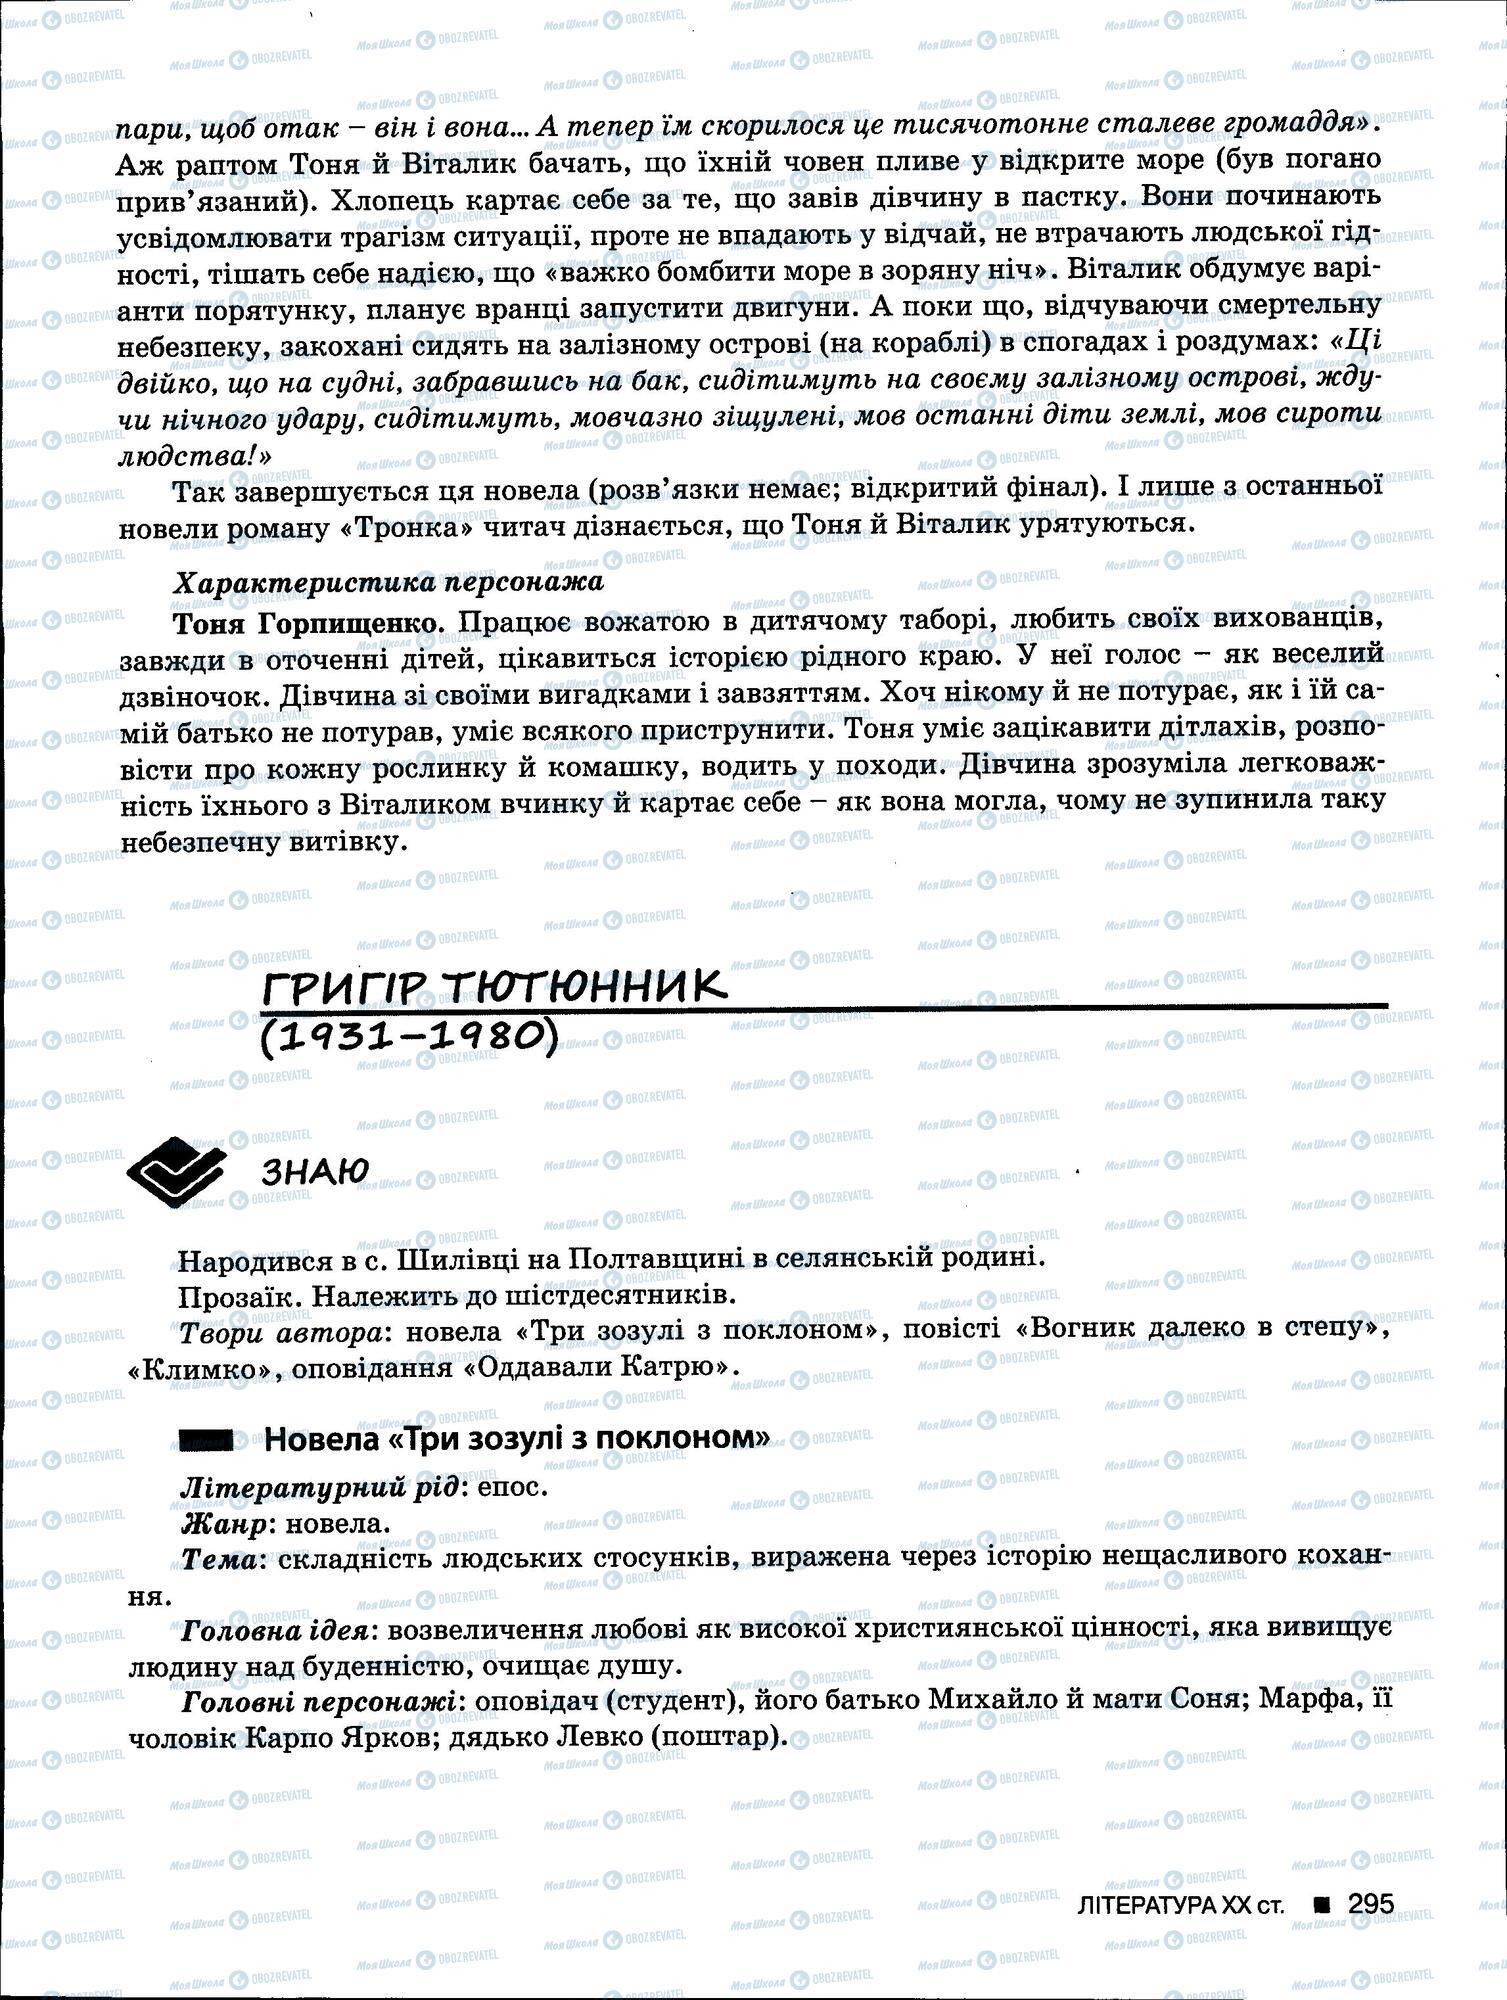 ЗНО Укр мова 11 класс страница 295